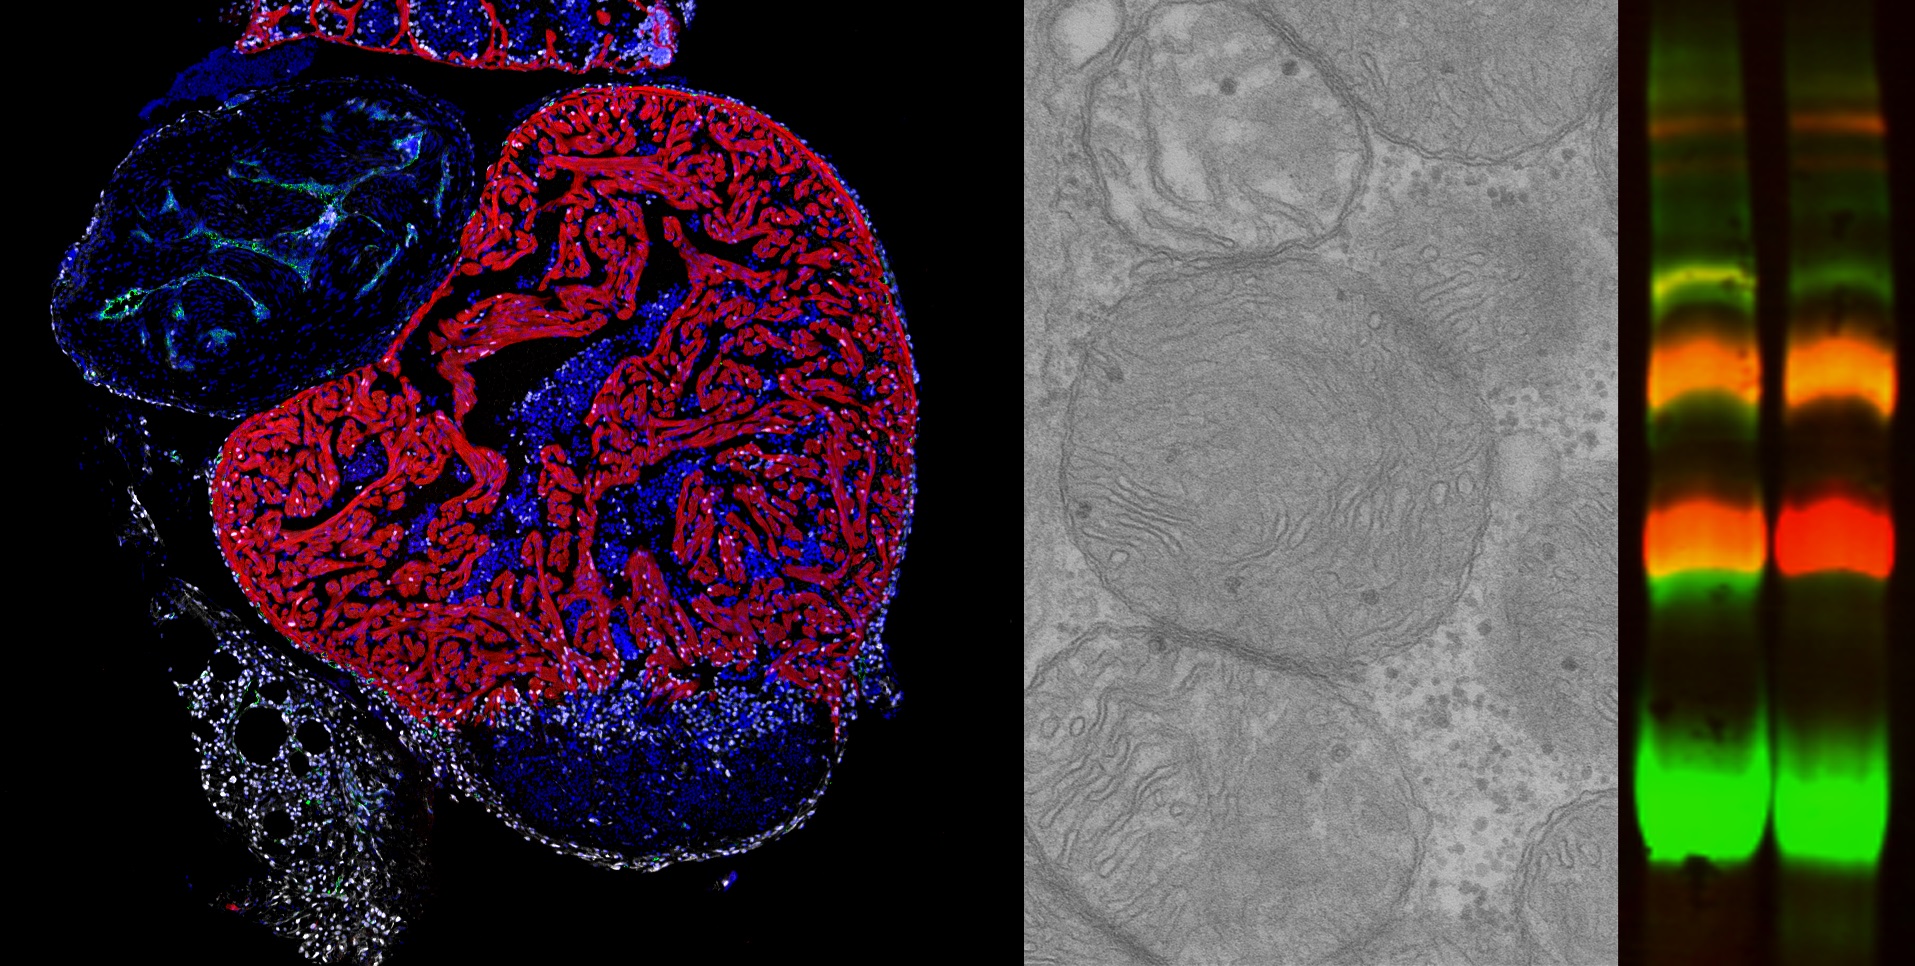 De izquierda a derecha: Immunofluorescencia en sección de corazón de pez cebra tras criolesion mostrando células proliferativas (blanco), cardiomiocitos (rojo) núcleos celulares (azul). Imagen de Microscopia electrónica mostrando mitocondrias. Gel Blue Native mostrando bandas correspondientes a supercomplejos formados por CIII (rojo) y CIV (verde).